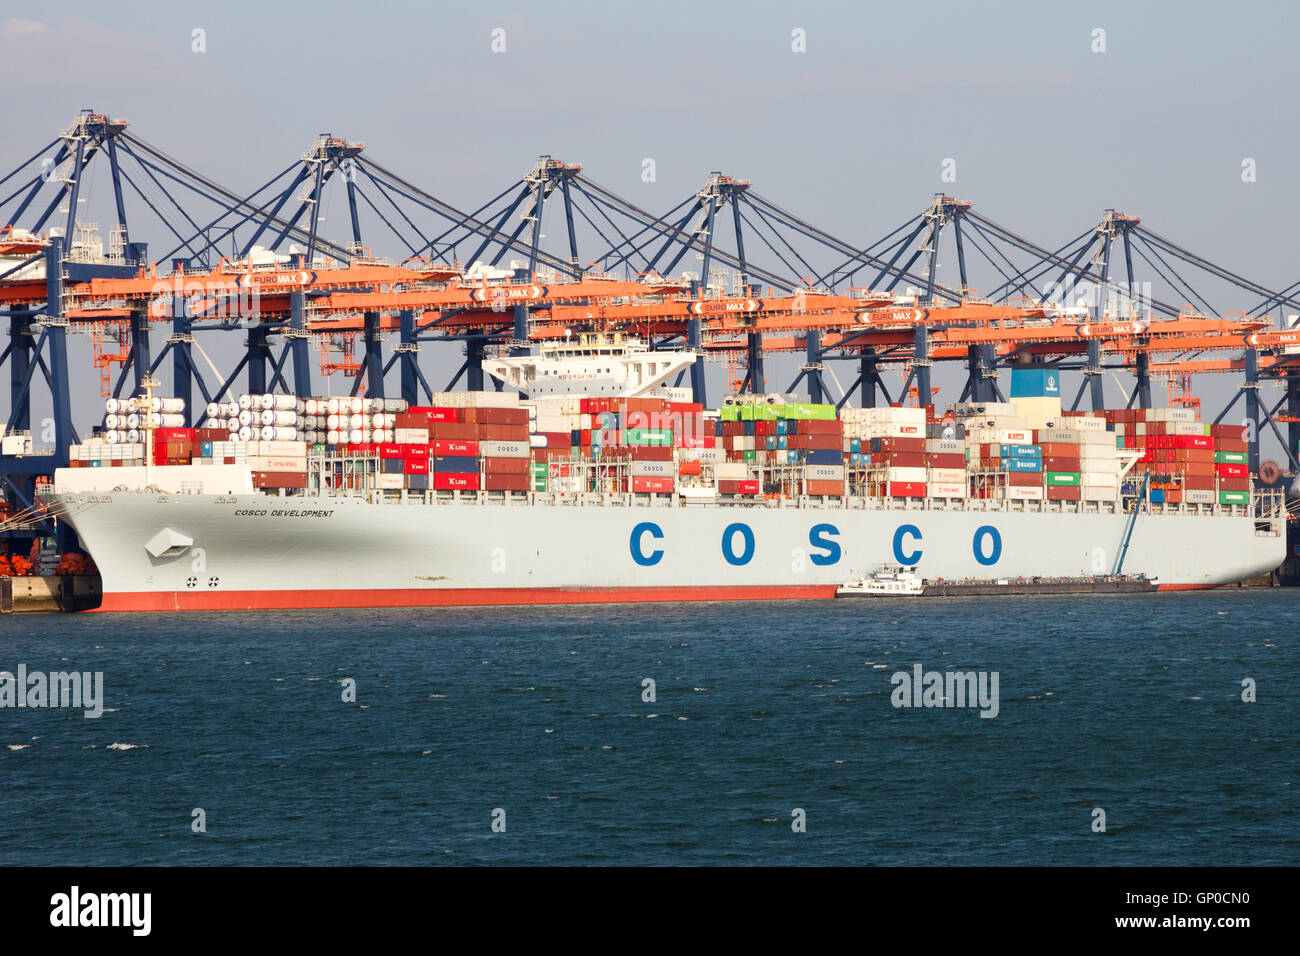 Containerschiff Cosco Entwicklung vertäut am Euromax Container-terminal im Hafen von Rotterdam. Stockfoto